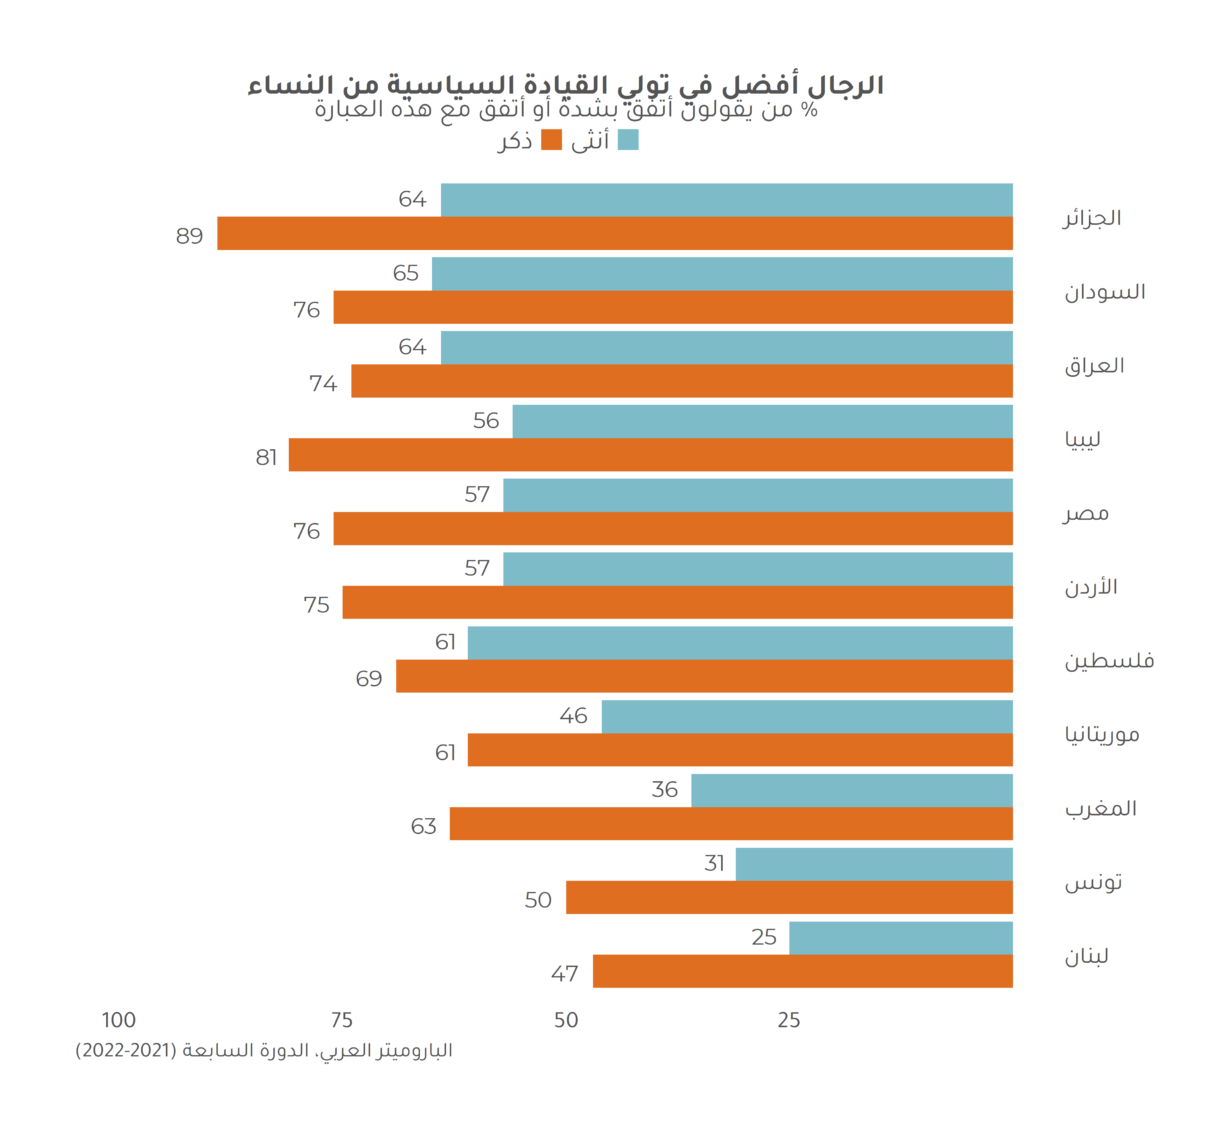 الرأي العام في الشرق الأوسط وشمال أفريقيا تجاه قضايا النوع الاجتماعي 2021-2022